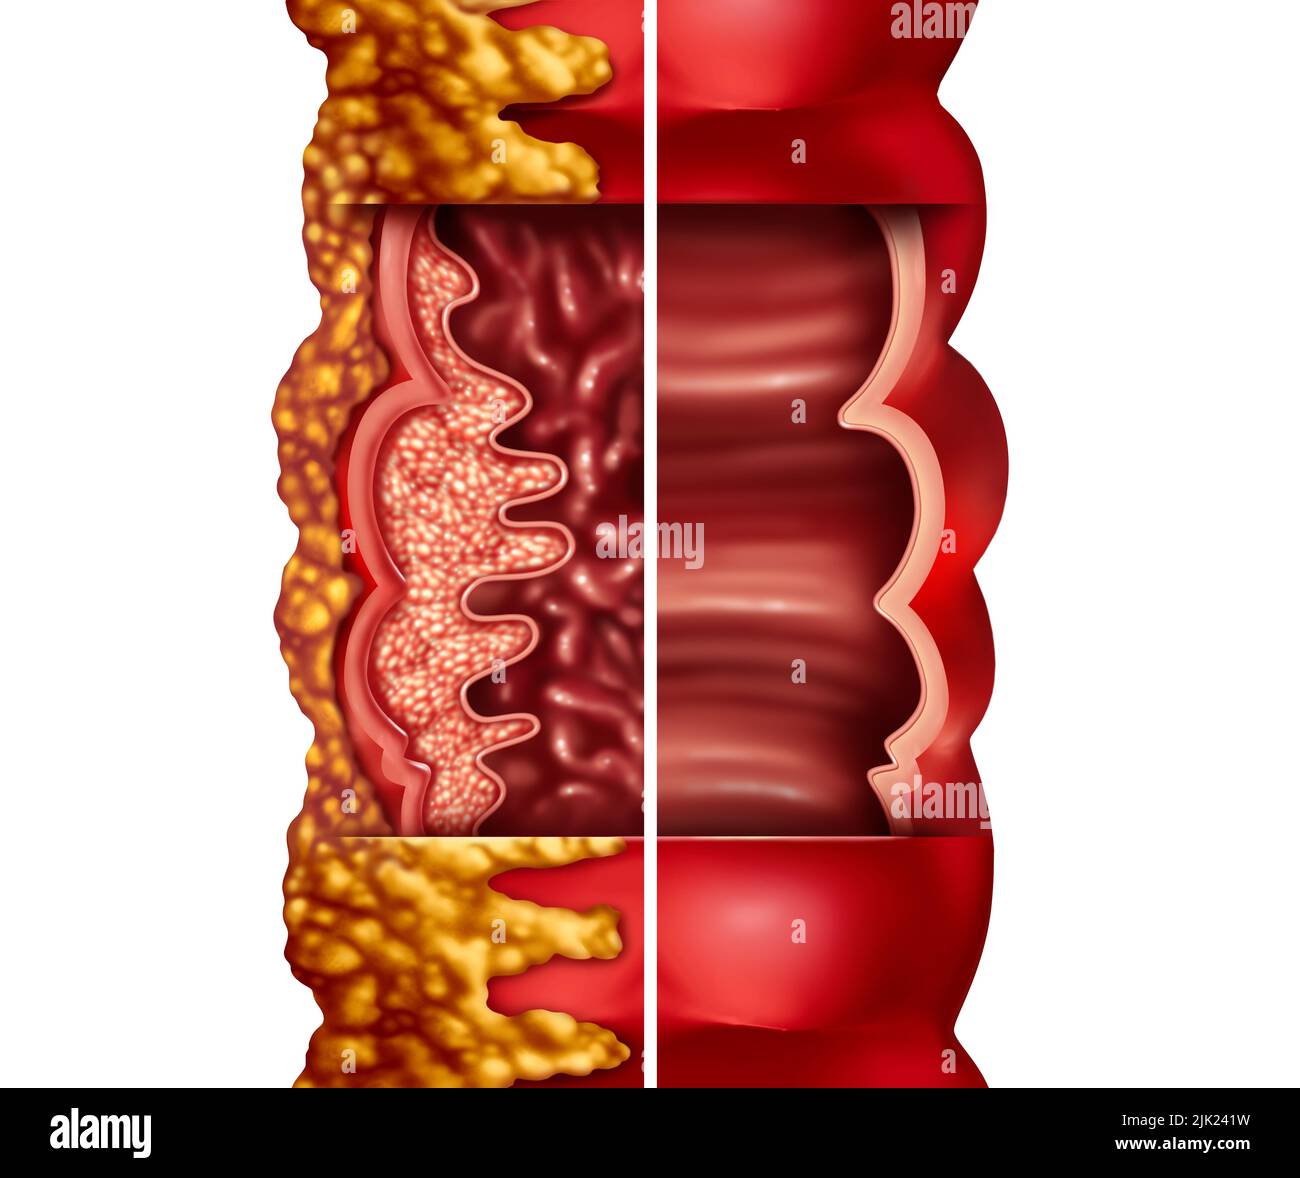 Malattia di Crohn e sindrome di Crohn malattia o malattia di crohns e colon sano come un concetto medico con un primo piano di un intestino umano Foto Stock